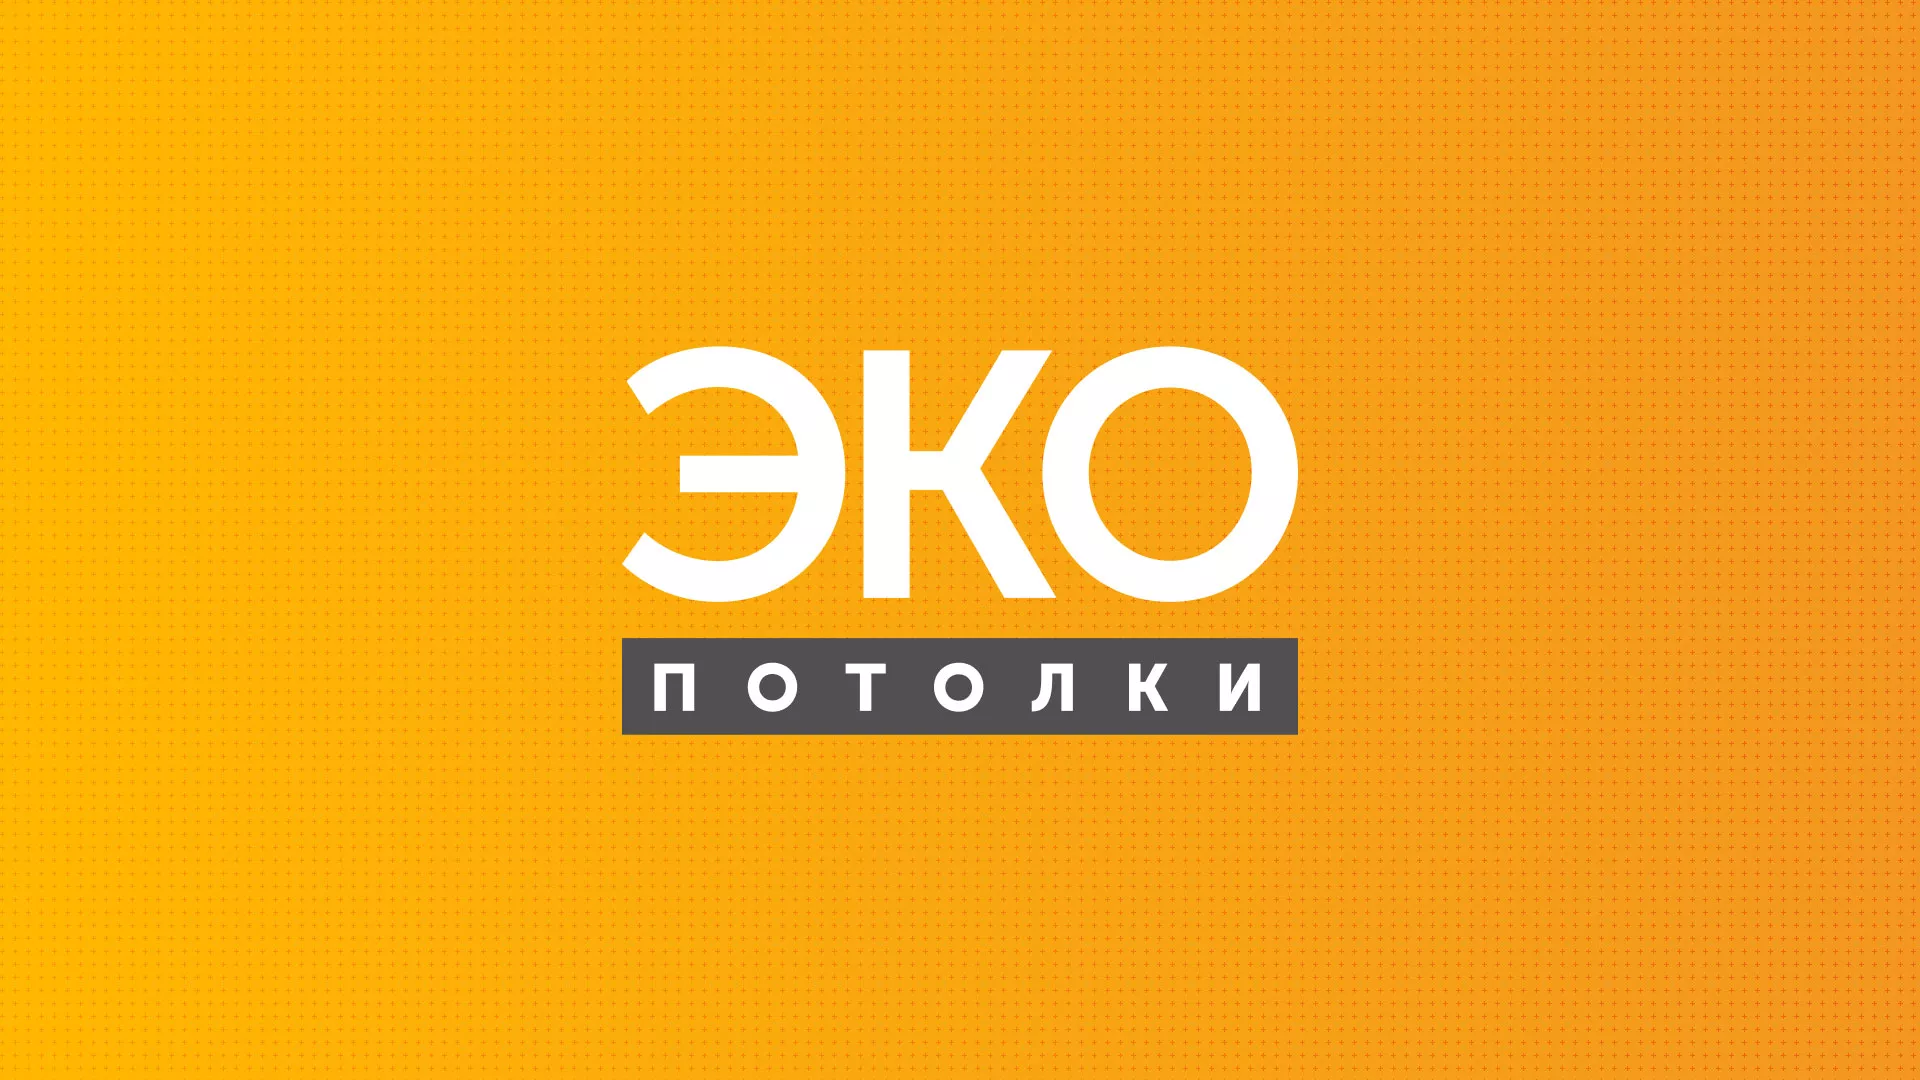 Разработка сайта по натяжным потолкам «Эко Потолки» в Севске